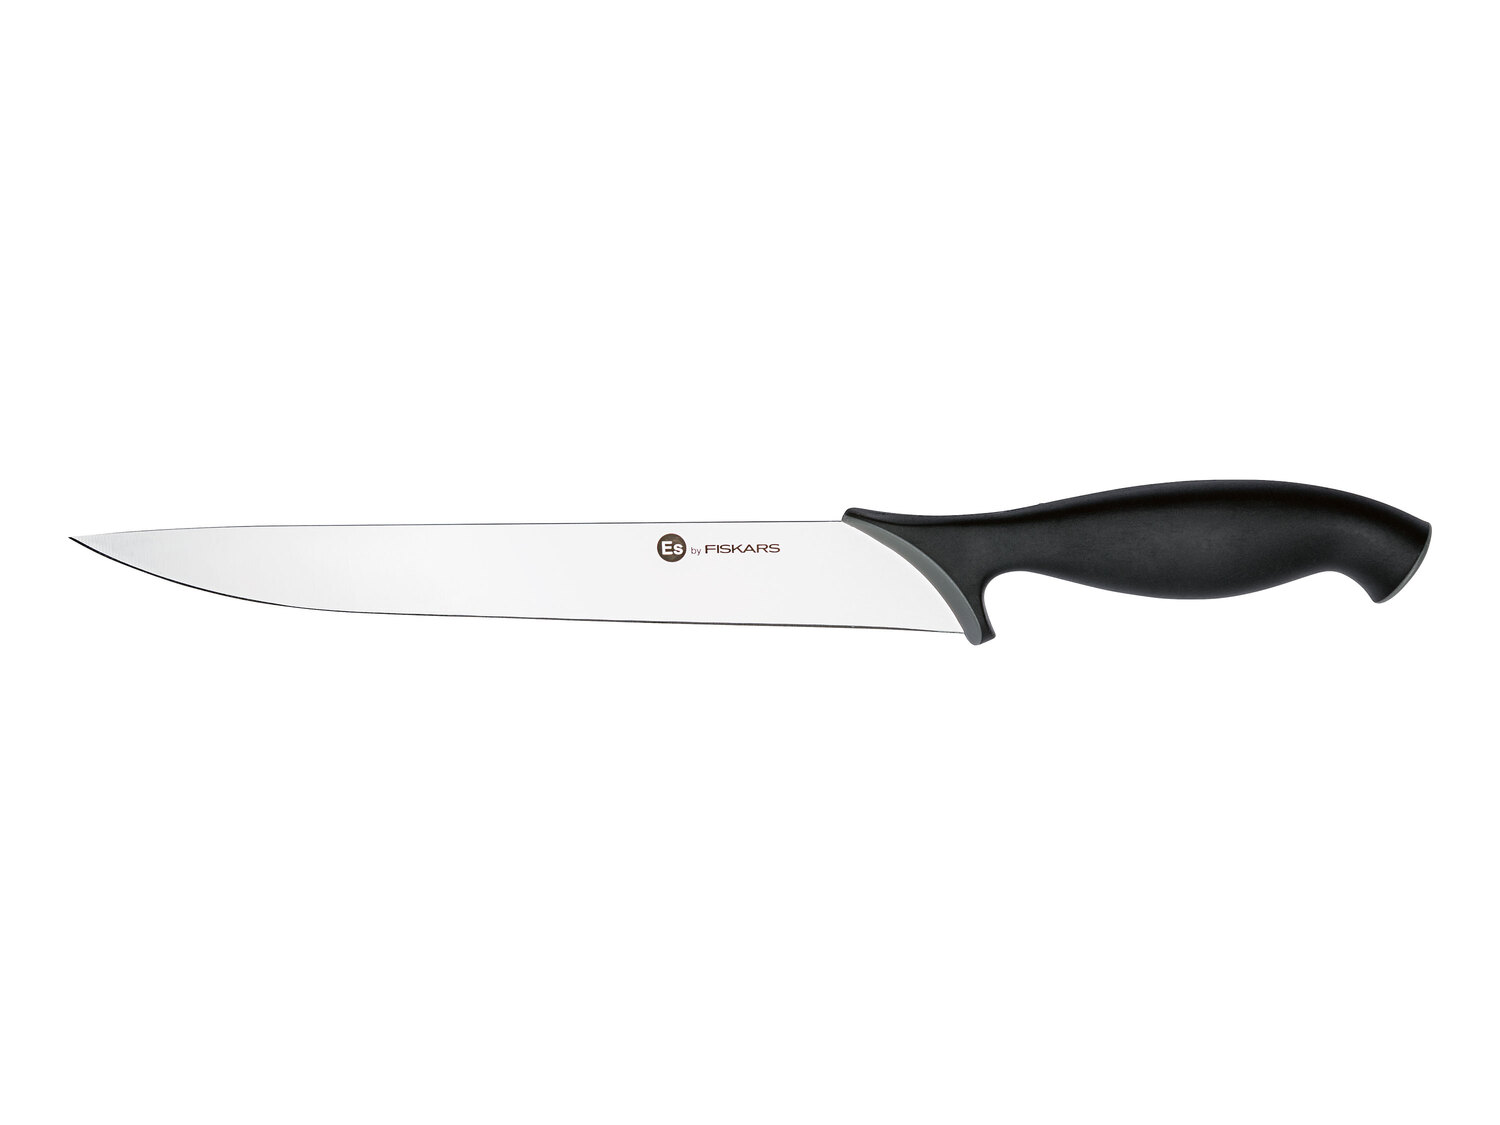 Fiskars nóż lub widelec kuchenny , cena 39,99 PLN 
różne rodzaje 
- do wyboru: ...